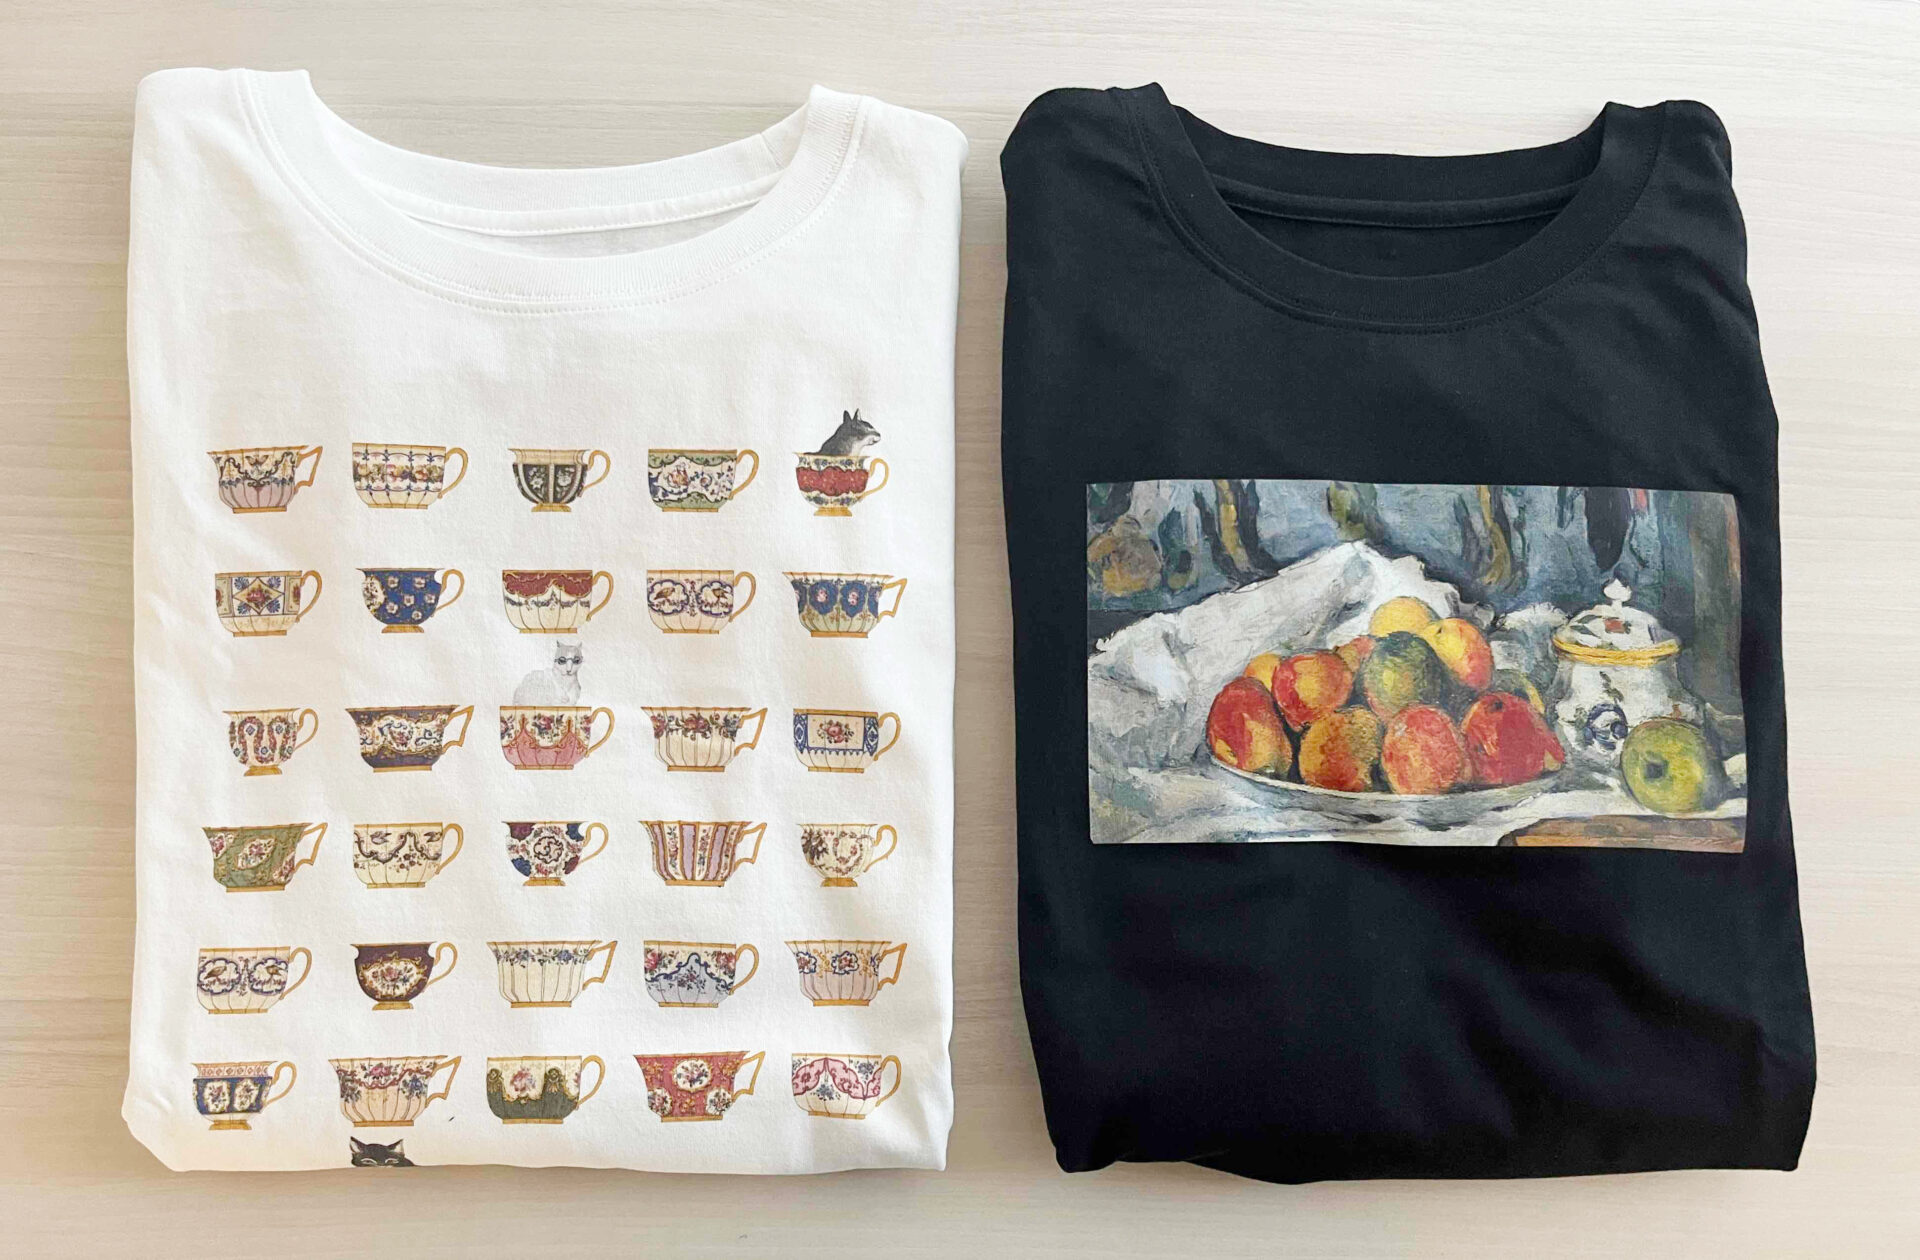 ティーポットの絵柄のしろじのTシャツとリンゴプレートの絵柄のくろじのTシャツが折りたたまれた状態で並べられている写真